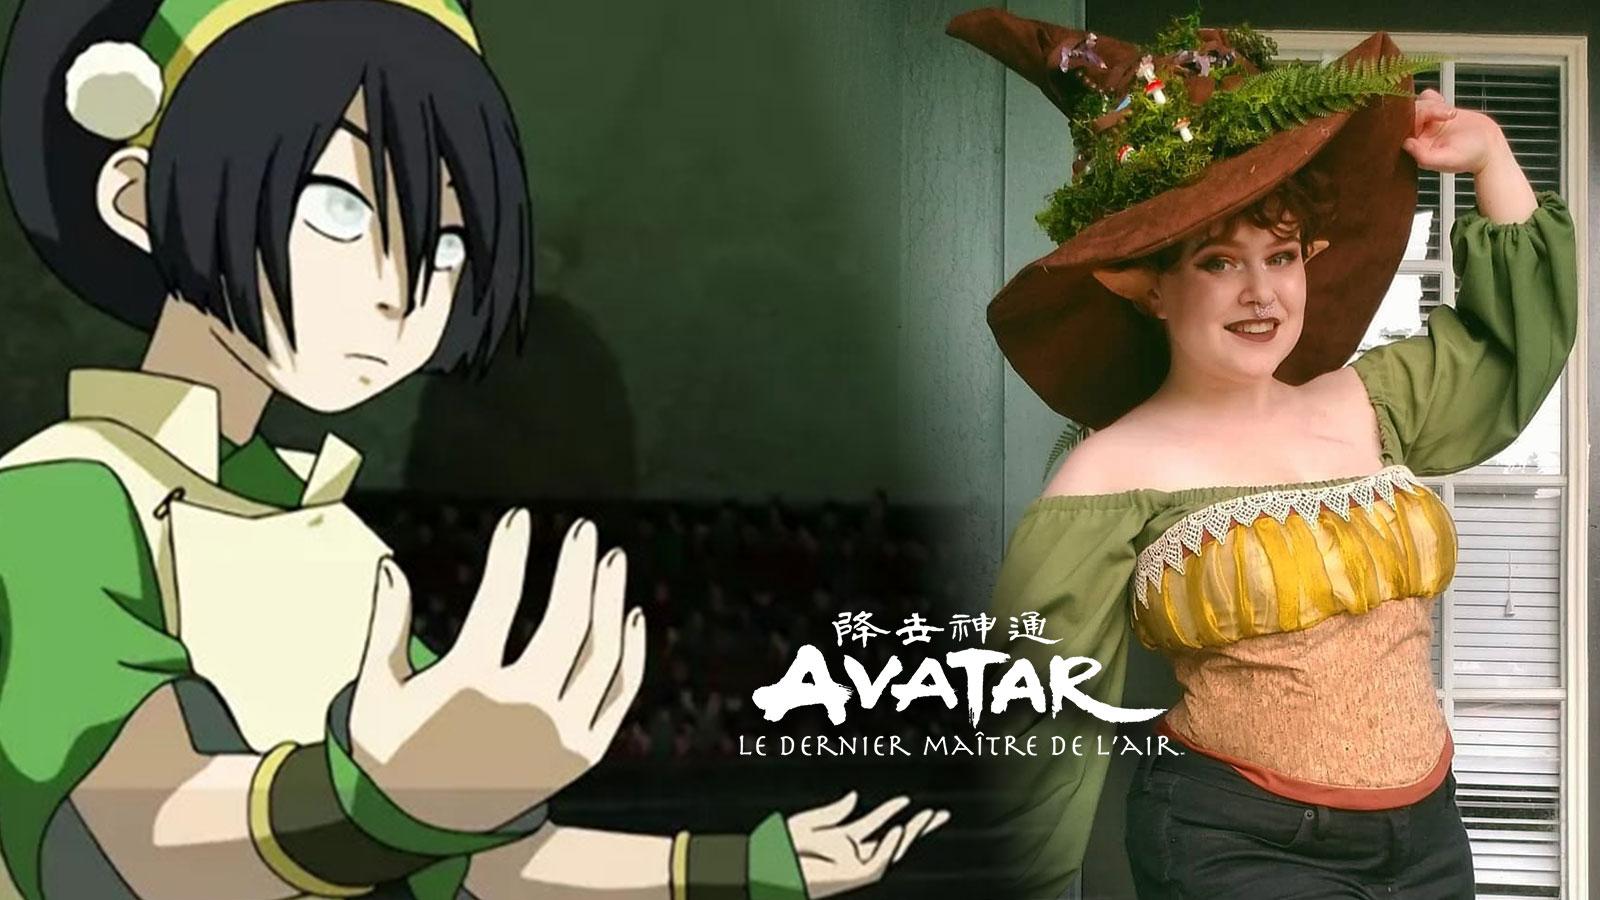 Une fan d’Avatar, le dernier maître de l’air s’illustre en tant que Toph